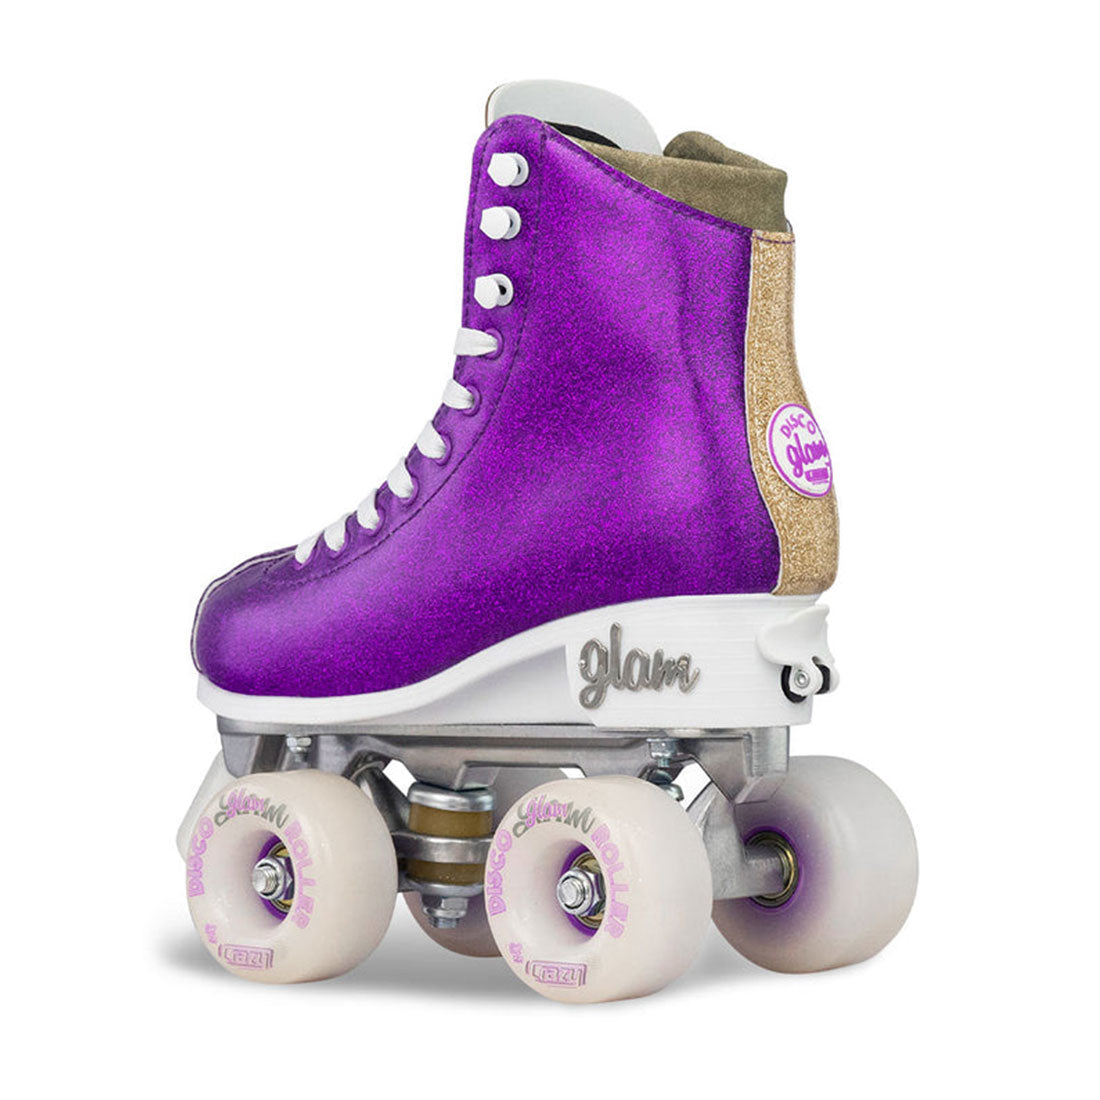 Crazy Disco Glam Purple/Gold - Kids Adjustable Roller Skates